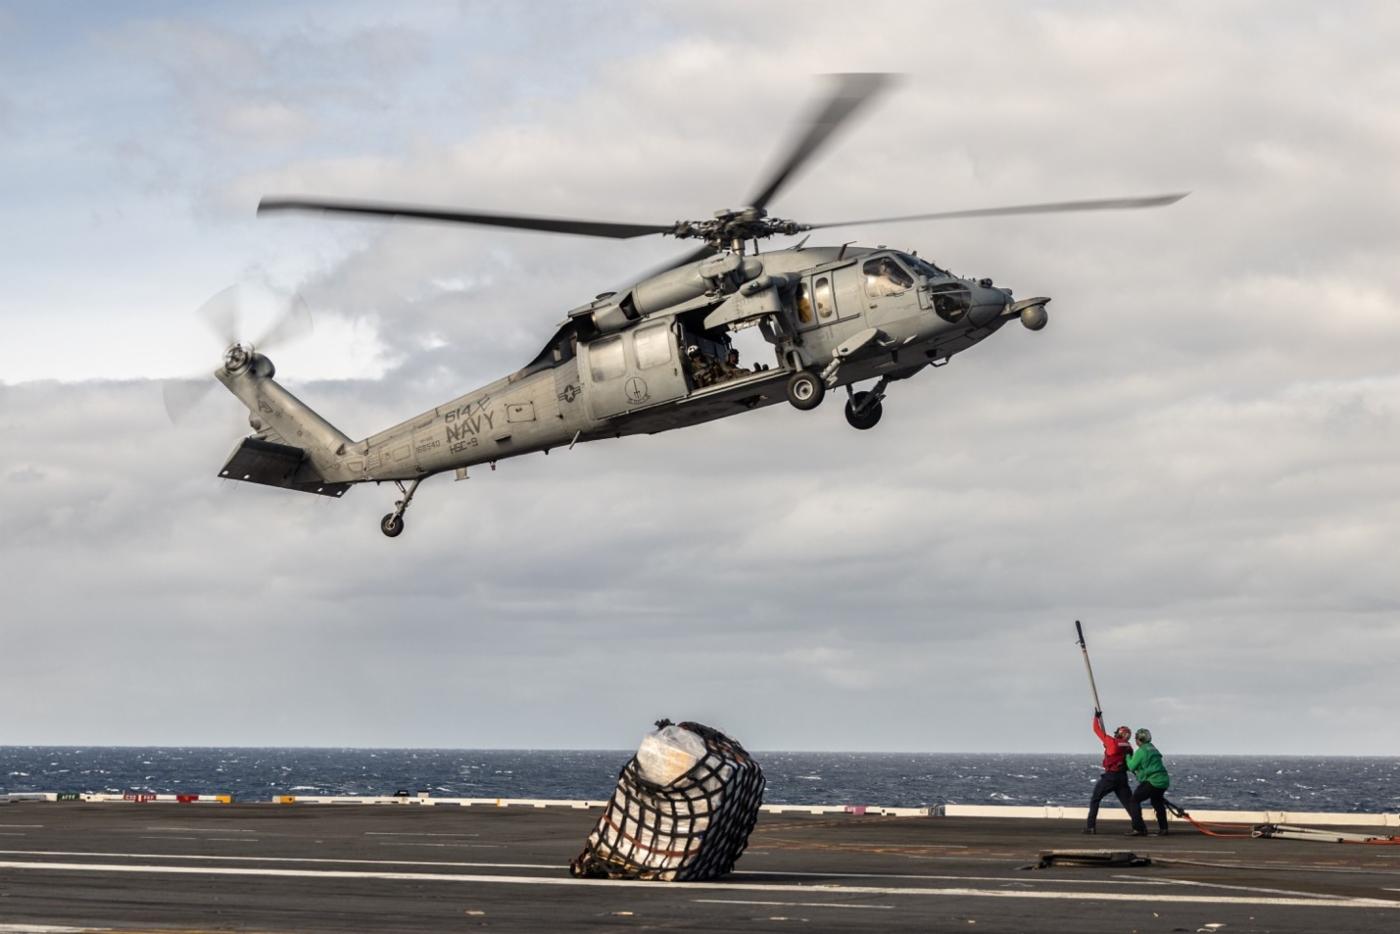 Helikopter H-60 Sierra (Sikorsky SH-60 Seahawk) wykonuje operację &quot;VertRep&quot; (pionowe uzupełnienie zapasów), podczas której helikoptery kursują pomiędzy pokładem lotniczym Forda a towarzyszącym okrętem zaopatrzeniowym, przerzucając pod sobą skrzynie z zaopatrzeniem.
)